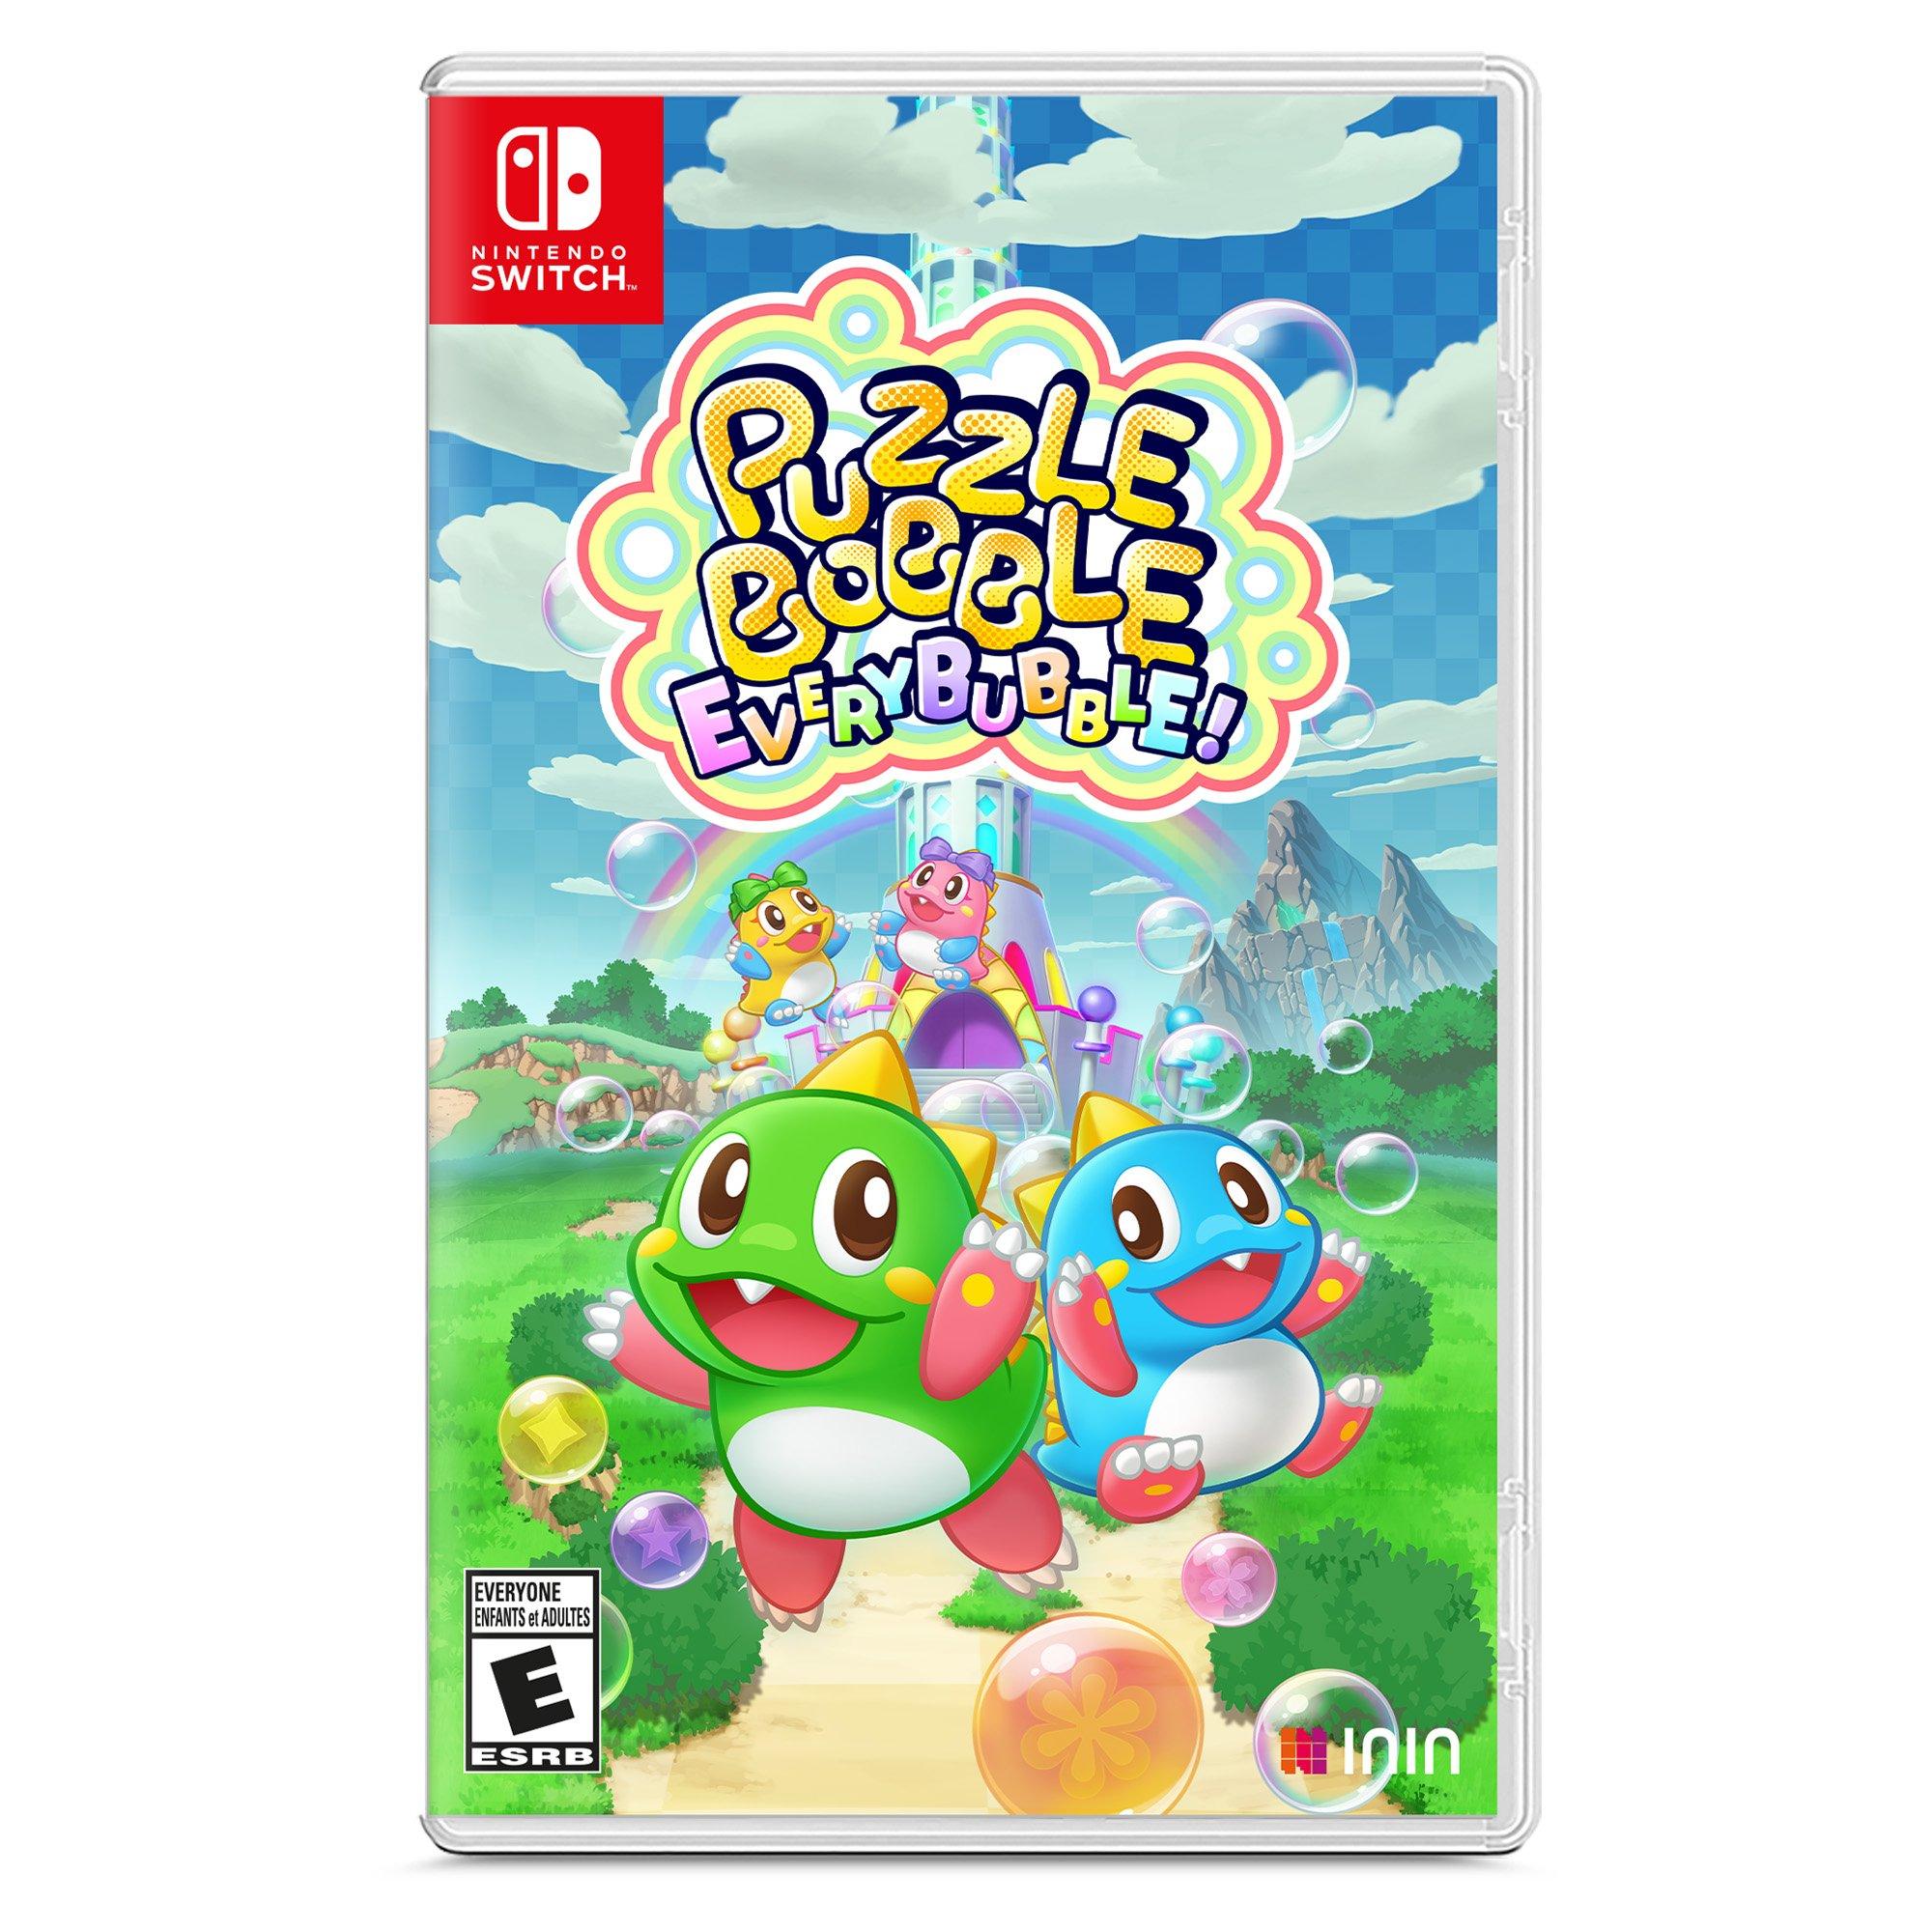 Puzzle Bobble Everybubble! é anunciado para o Switch e chega em